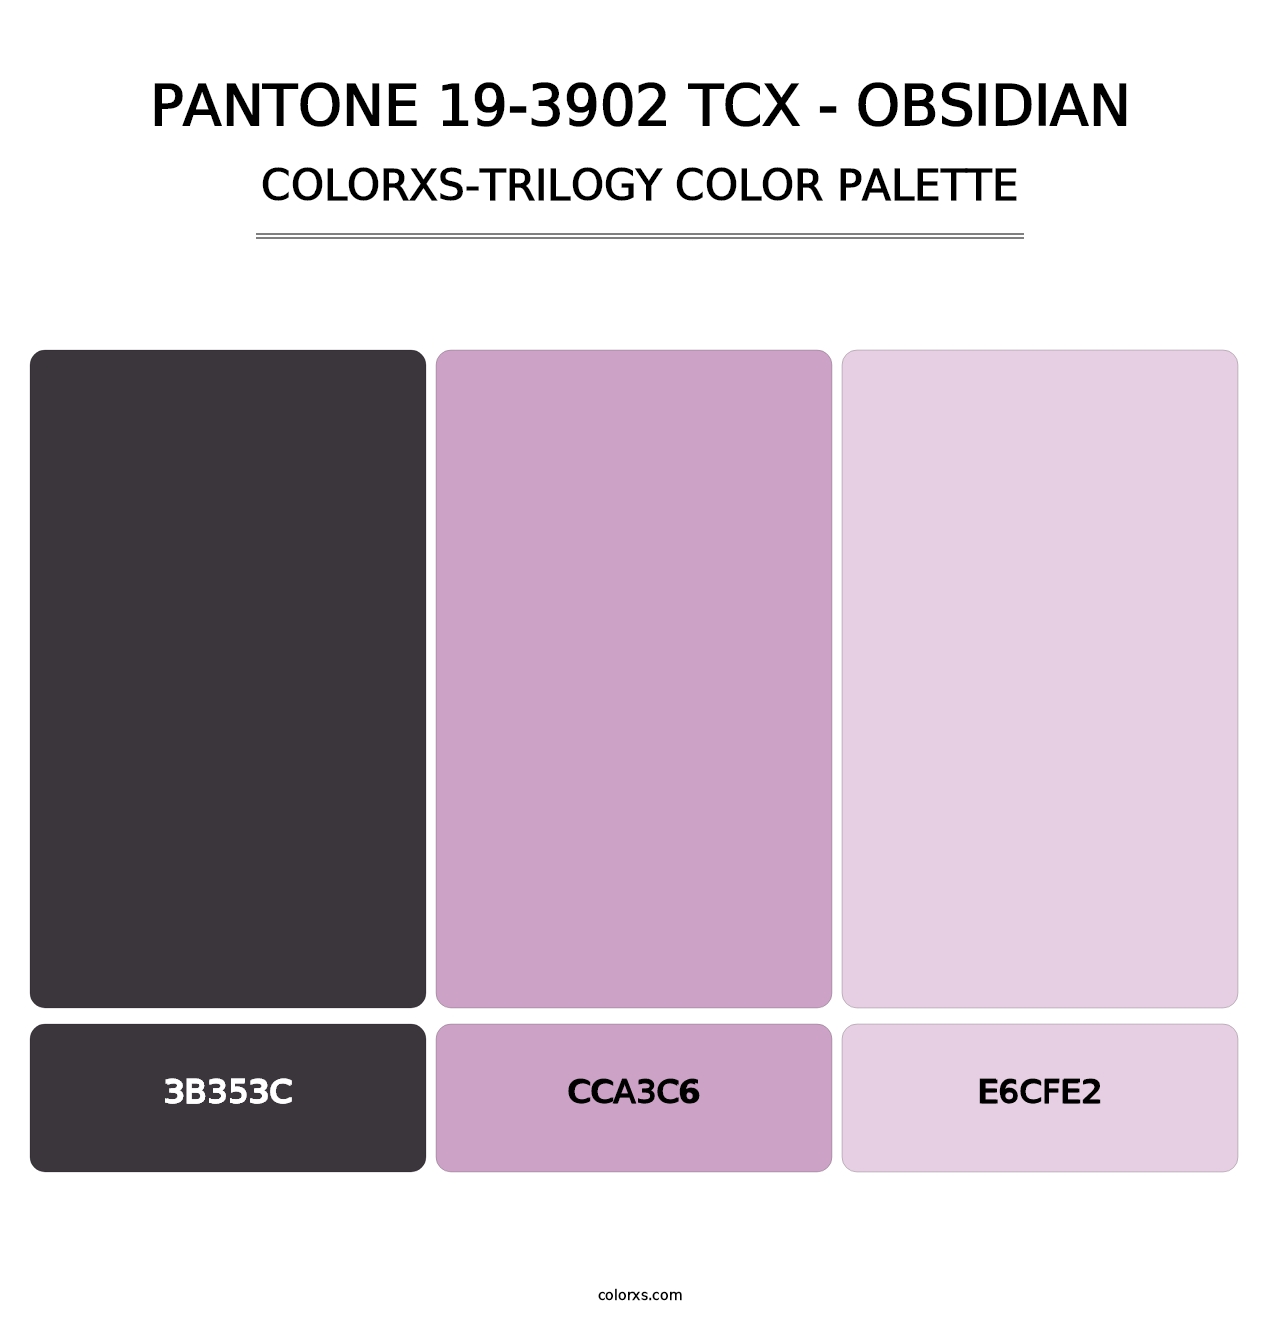 PANTONE 19-3902 TCX - Obsidian - Colorxs Trilogy Palette